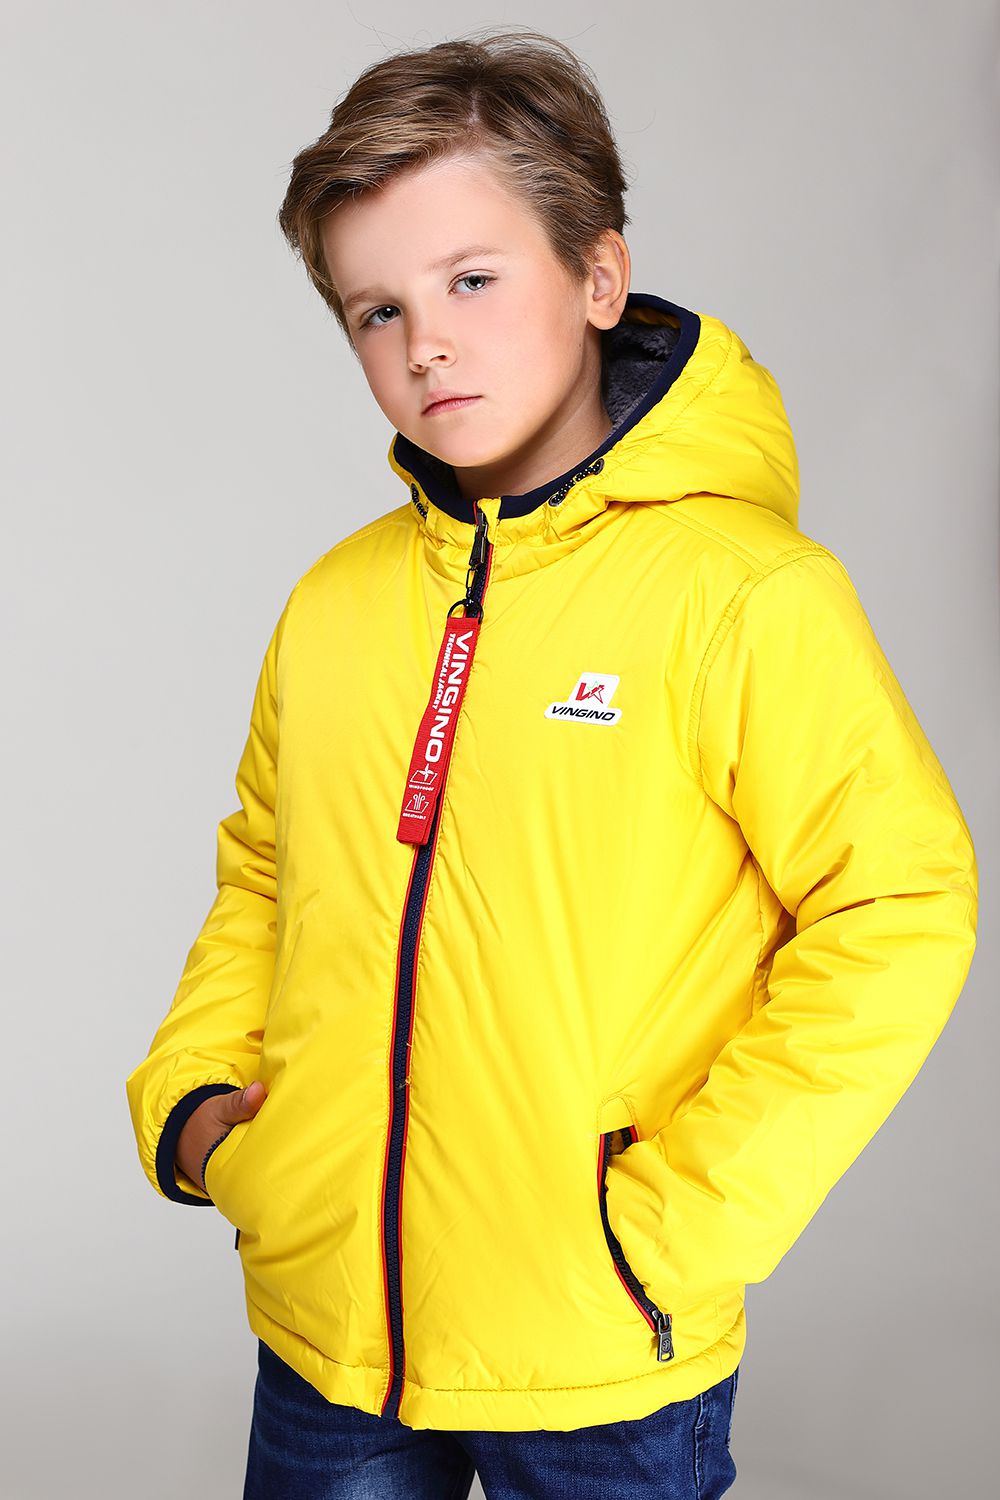 Желтая куртка для мальчика